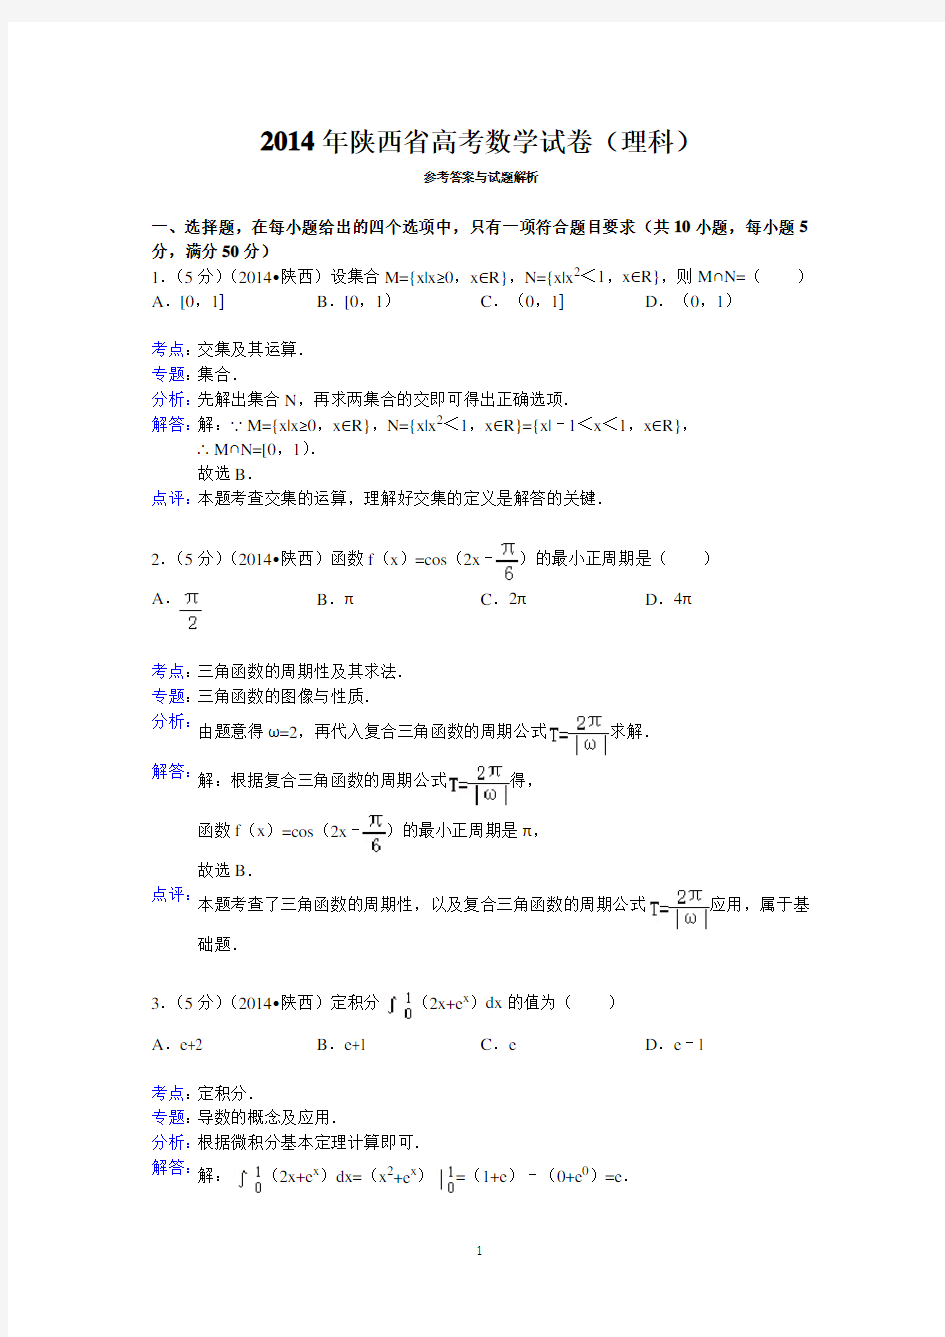 (完整版)2014年陕西省高考数学试卷(理科)答案与解析